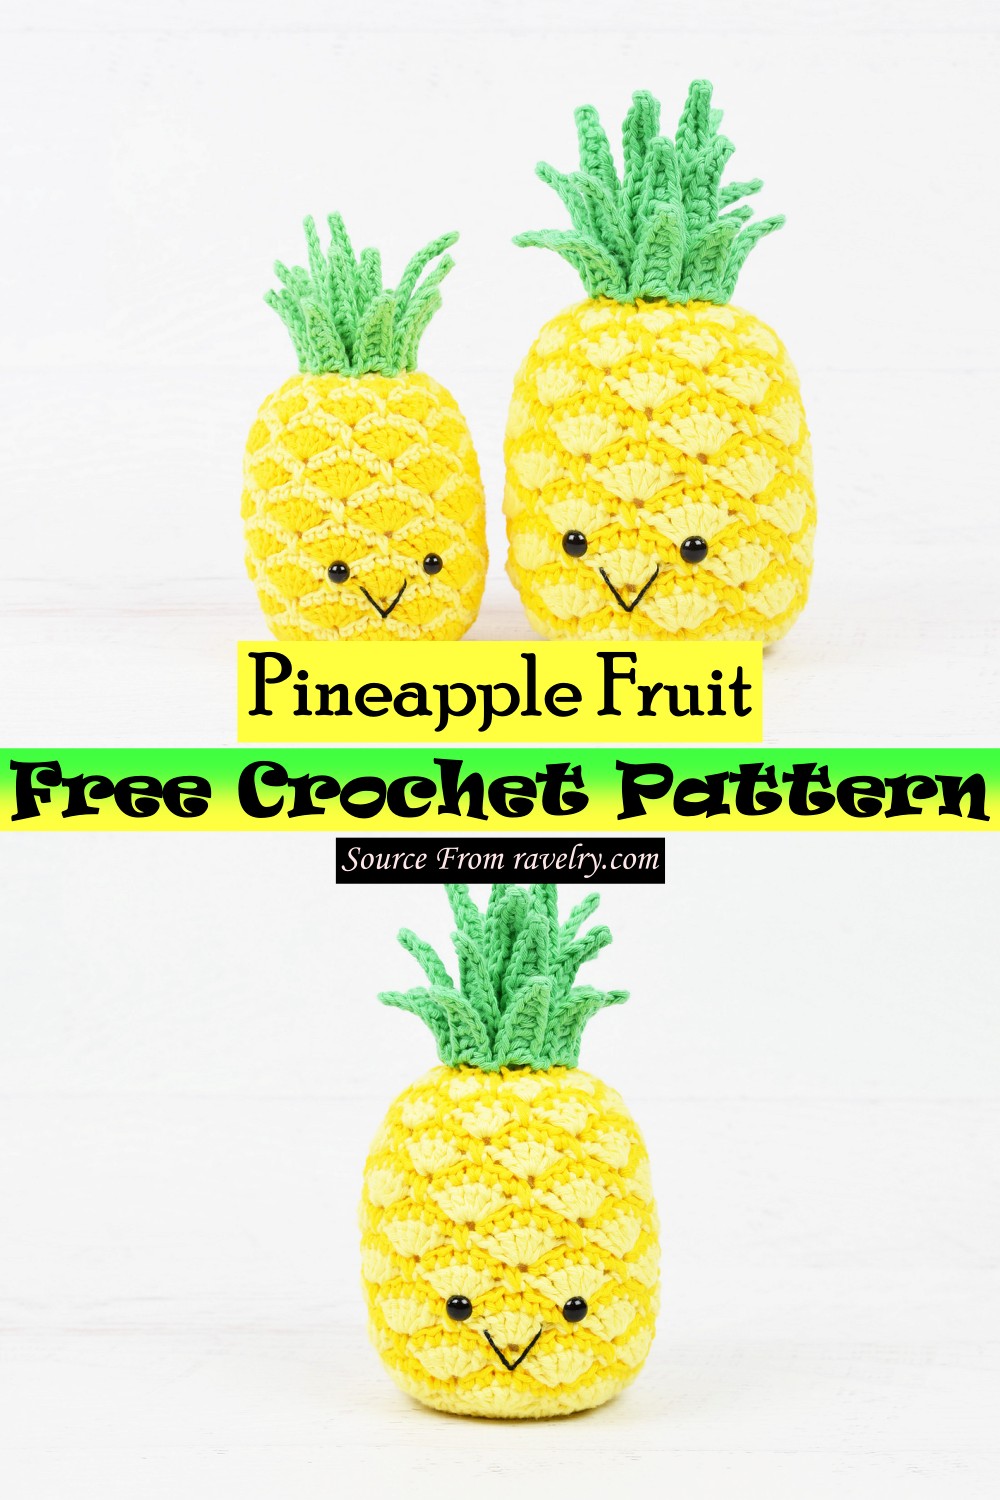 Free Crochet Pineapple Fruit Pattern